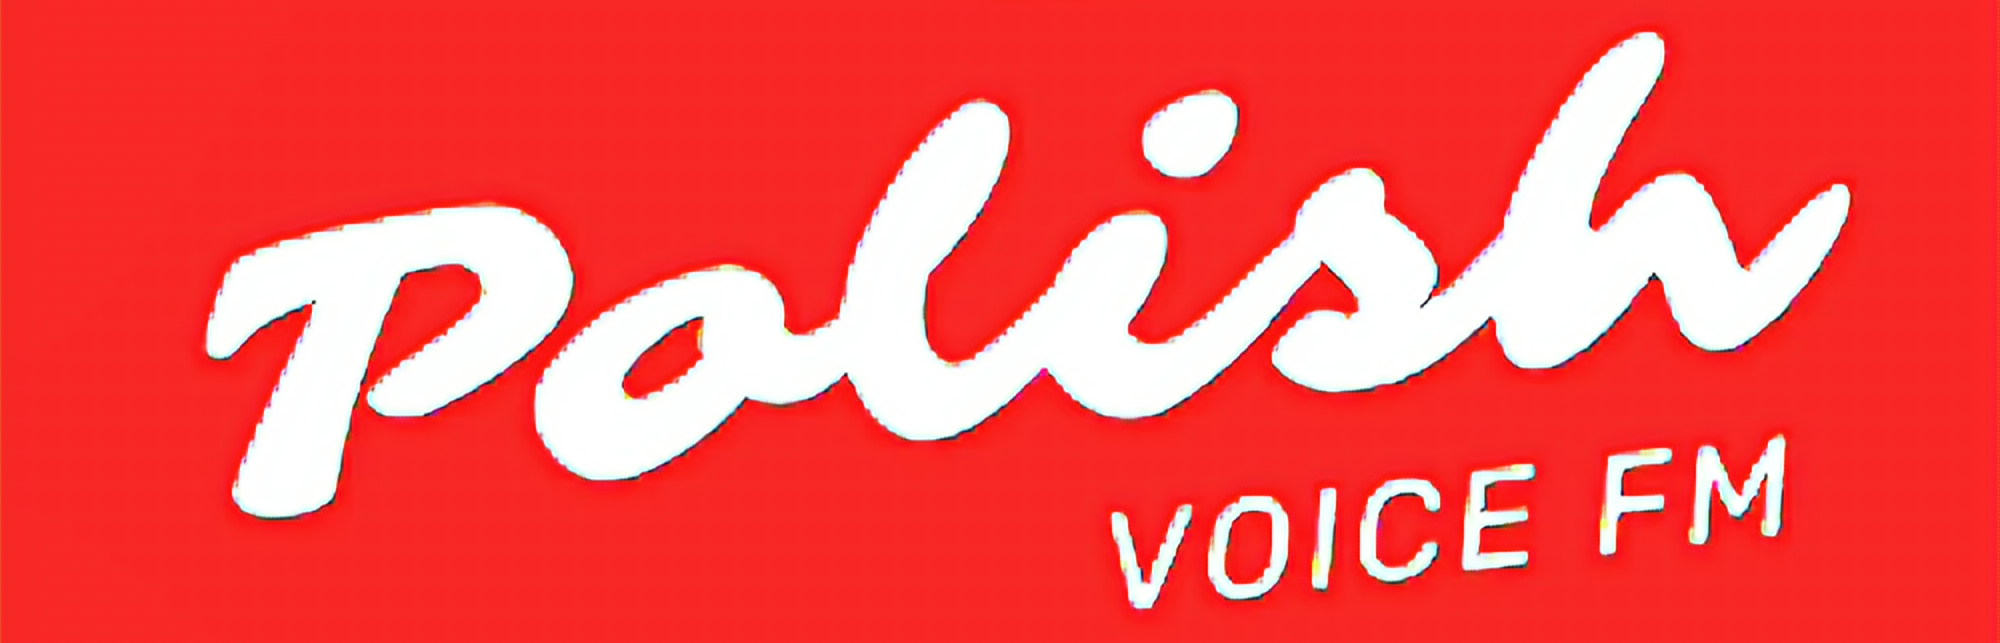 Polish Voice FM